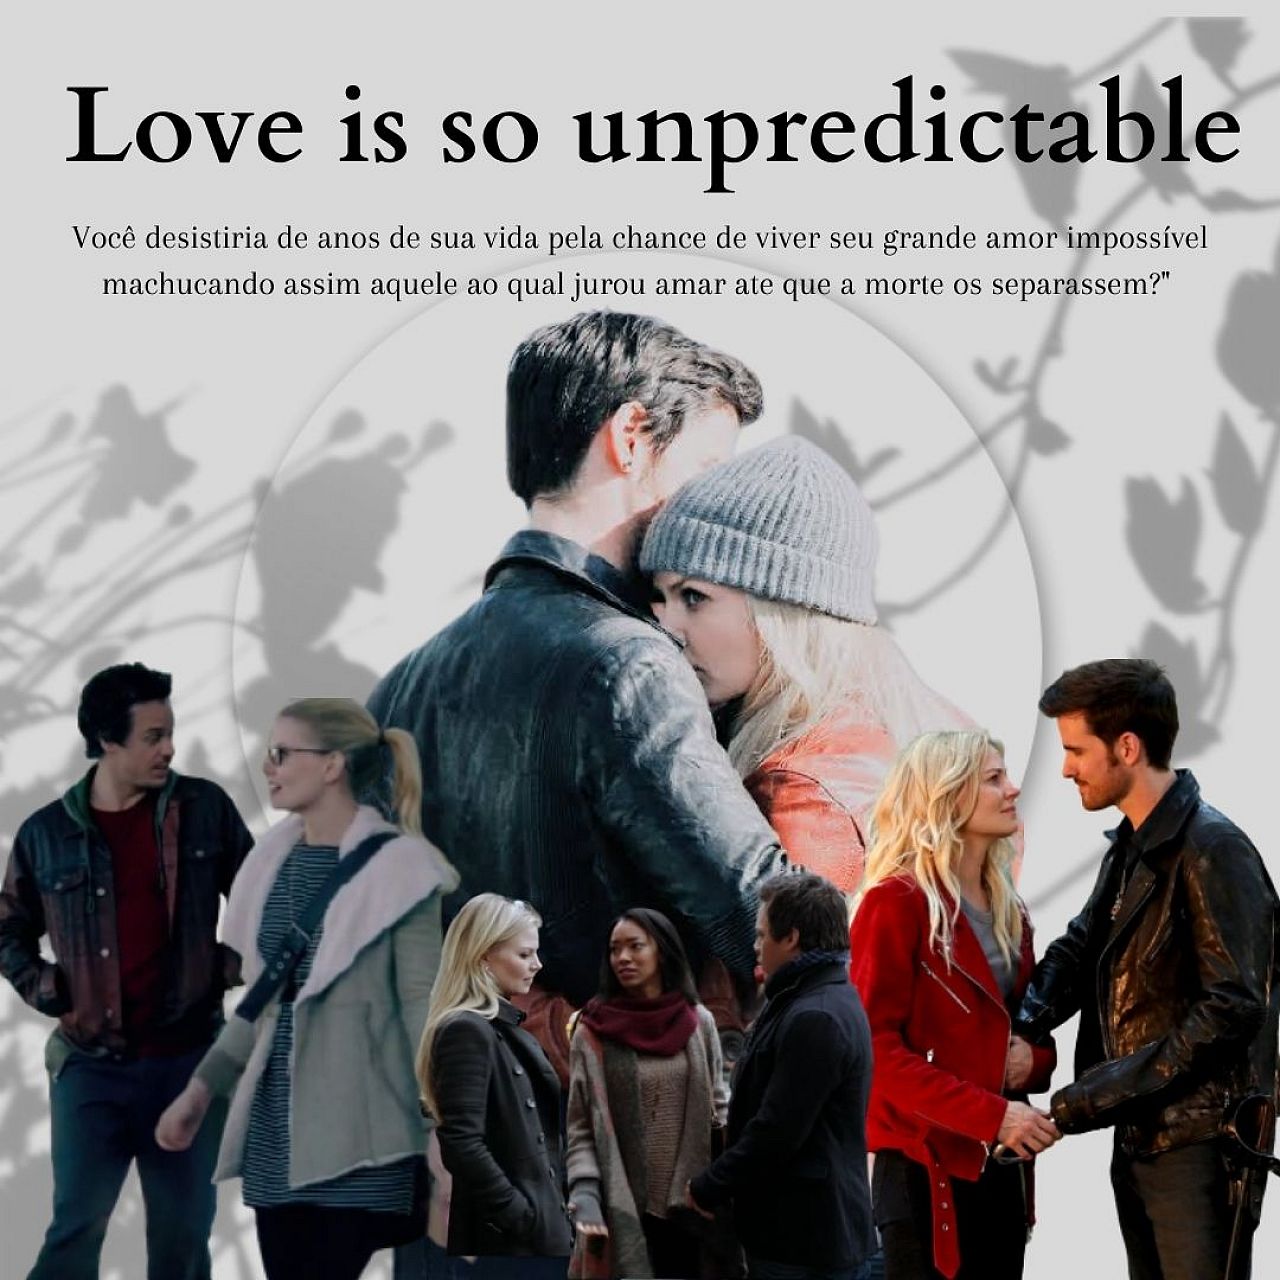 Love is so unpredictable